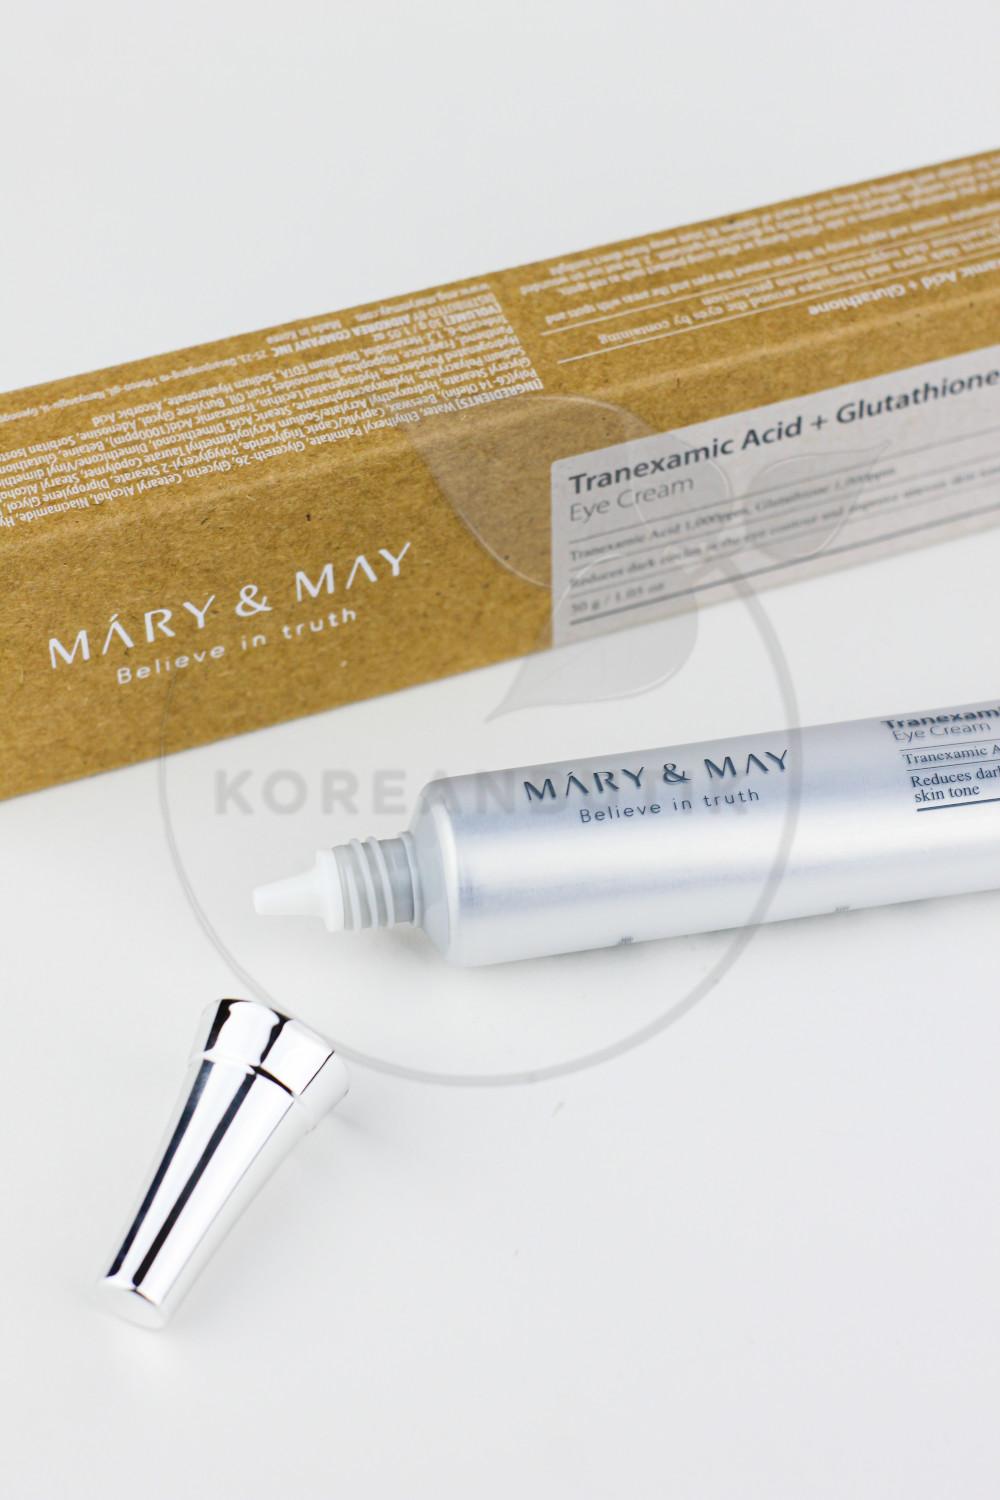  Mary&May Tranexamic Acid+ Glutathion Eye Cream 30мл 